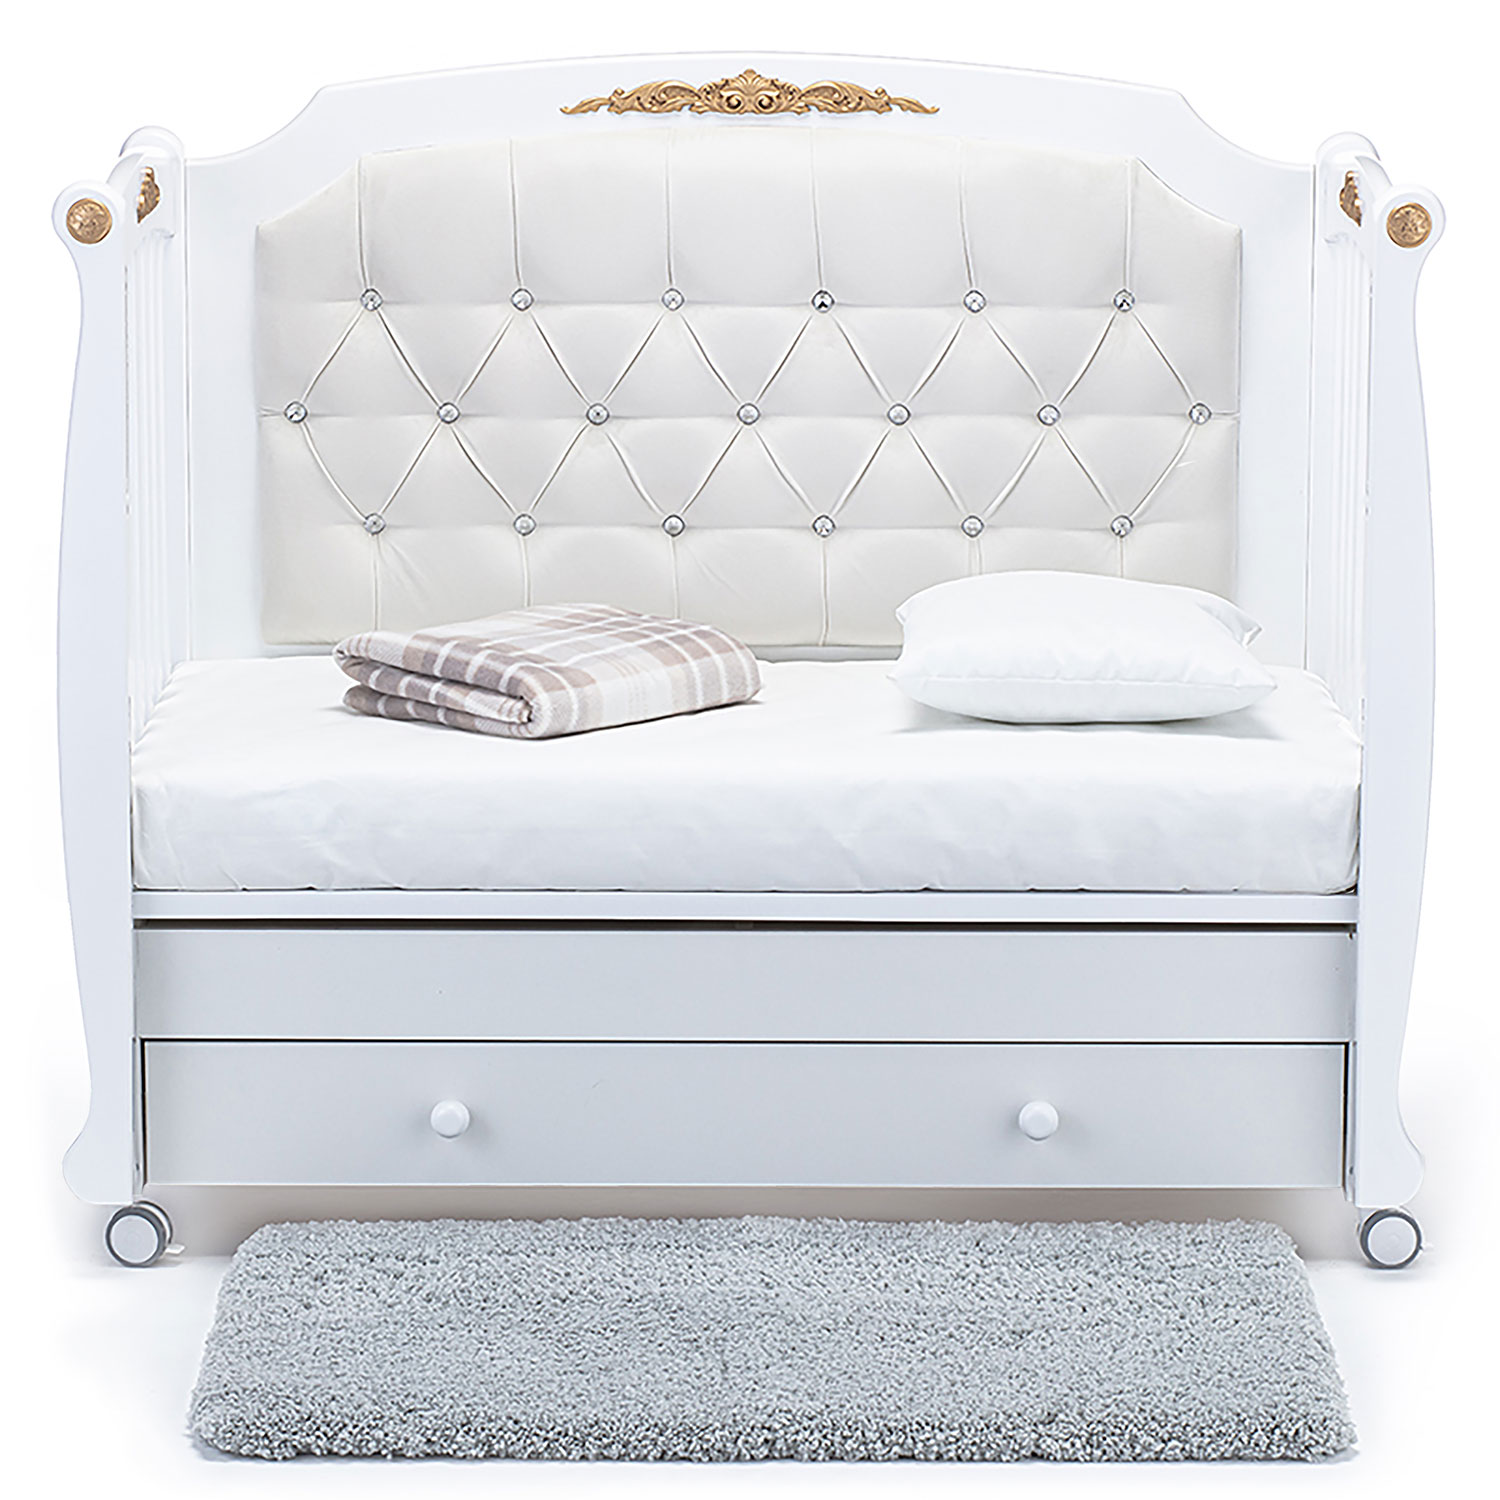 Детская кровать Nuovita Furore Swing продольный Bianco / Белый